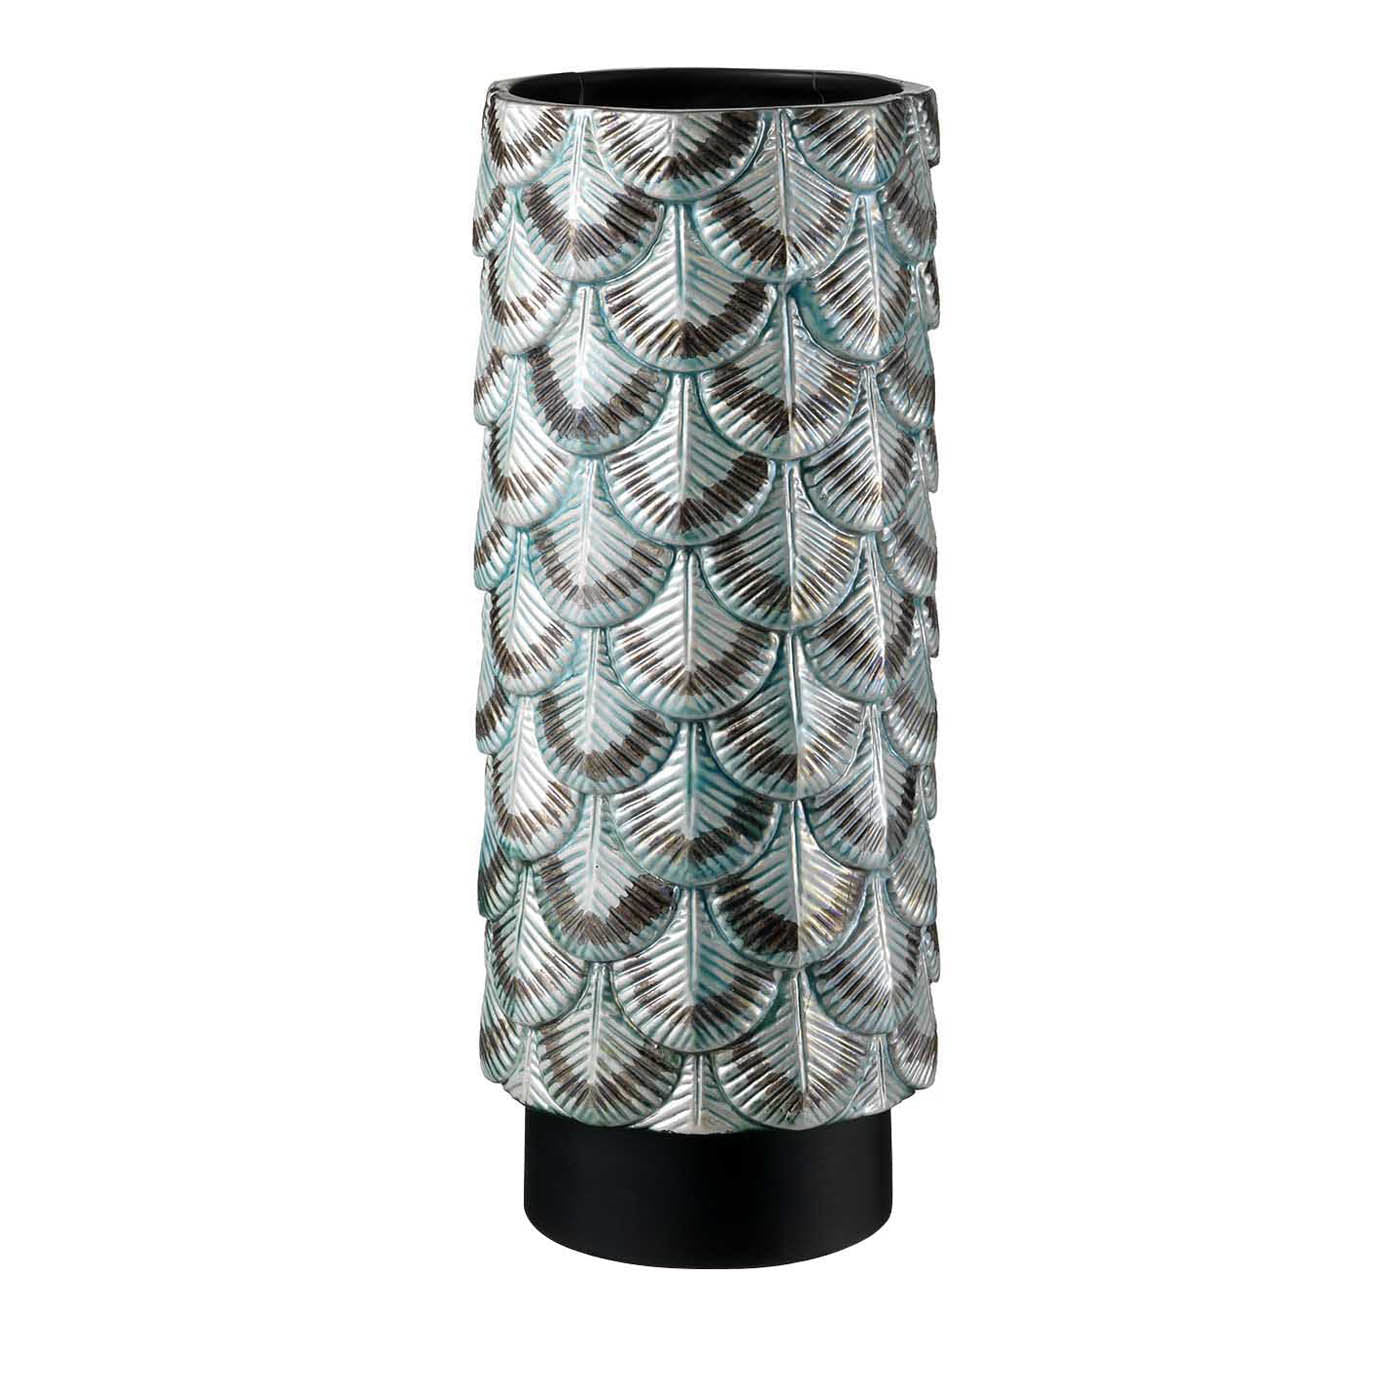 Vase mit grünem und silbernem Federkleid - Hauptansicht